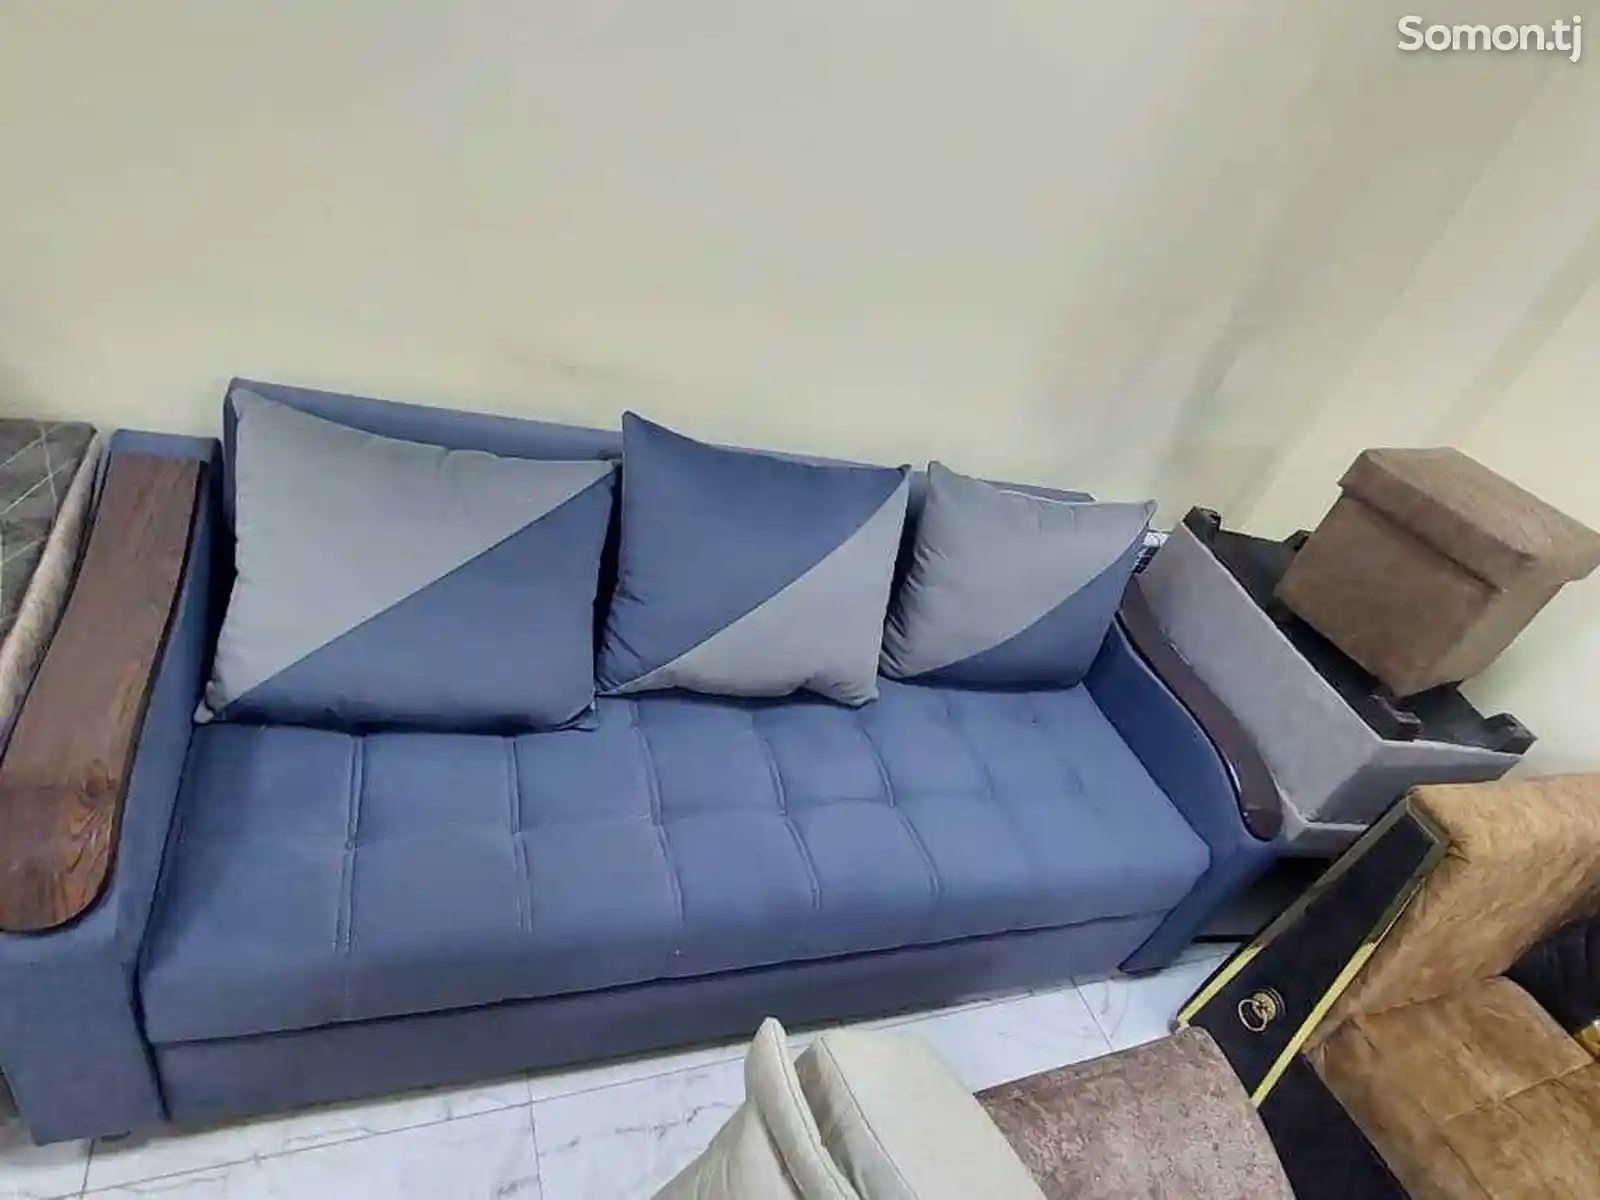 Мягкий диван